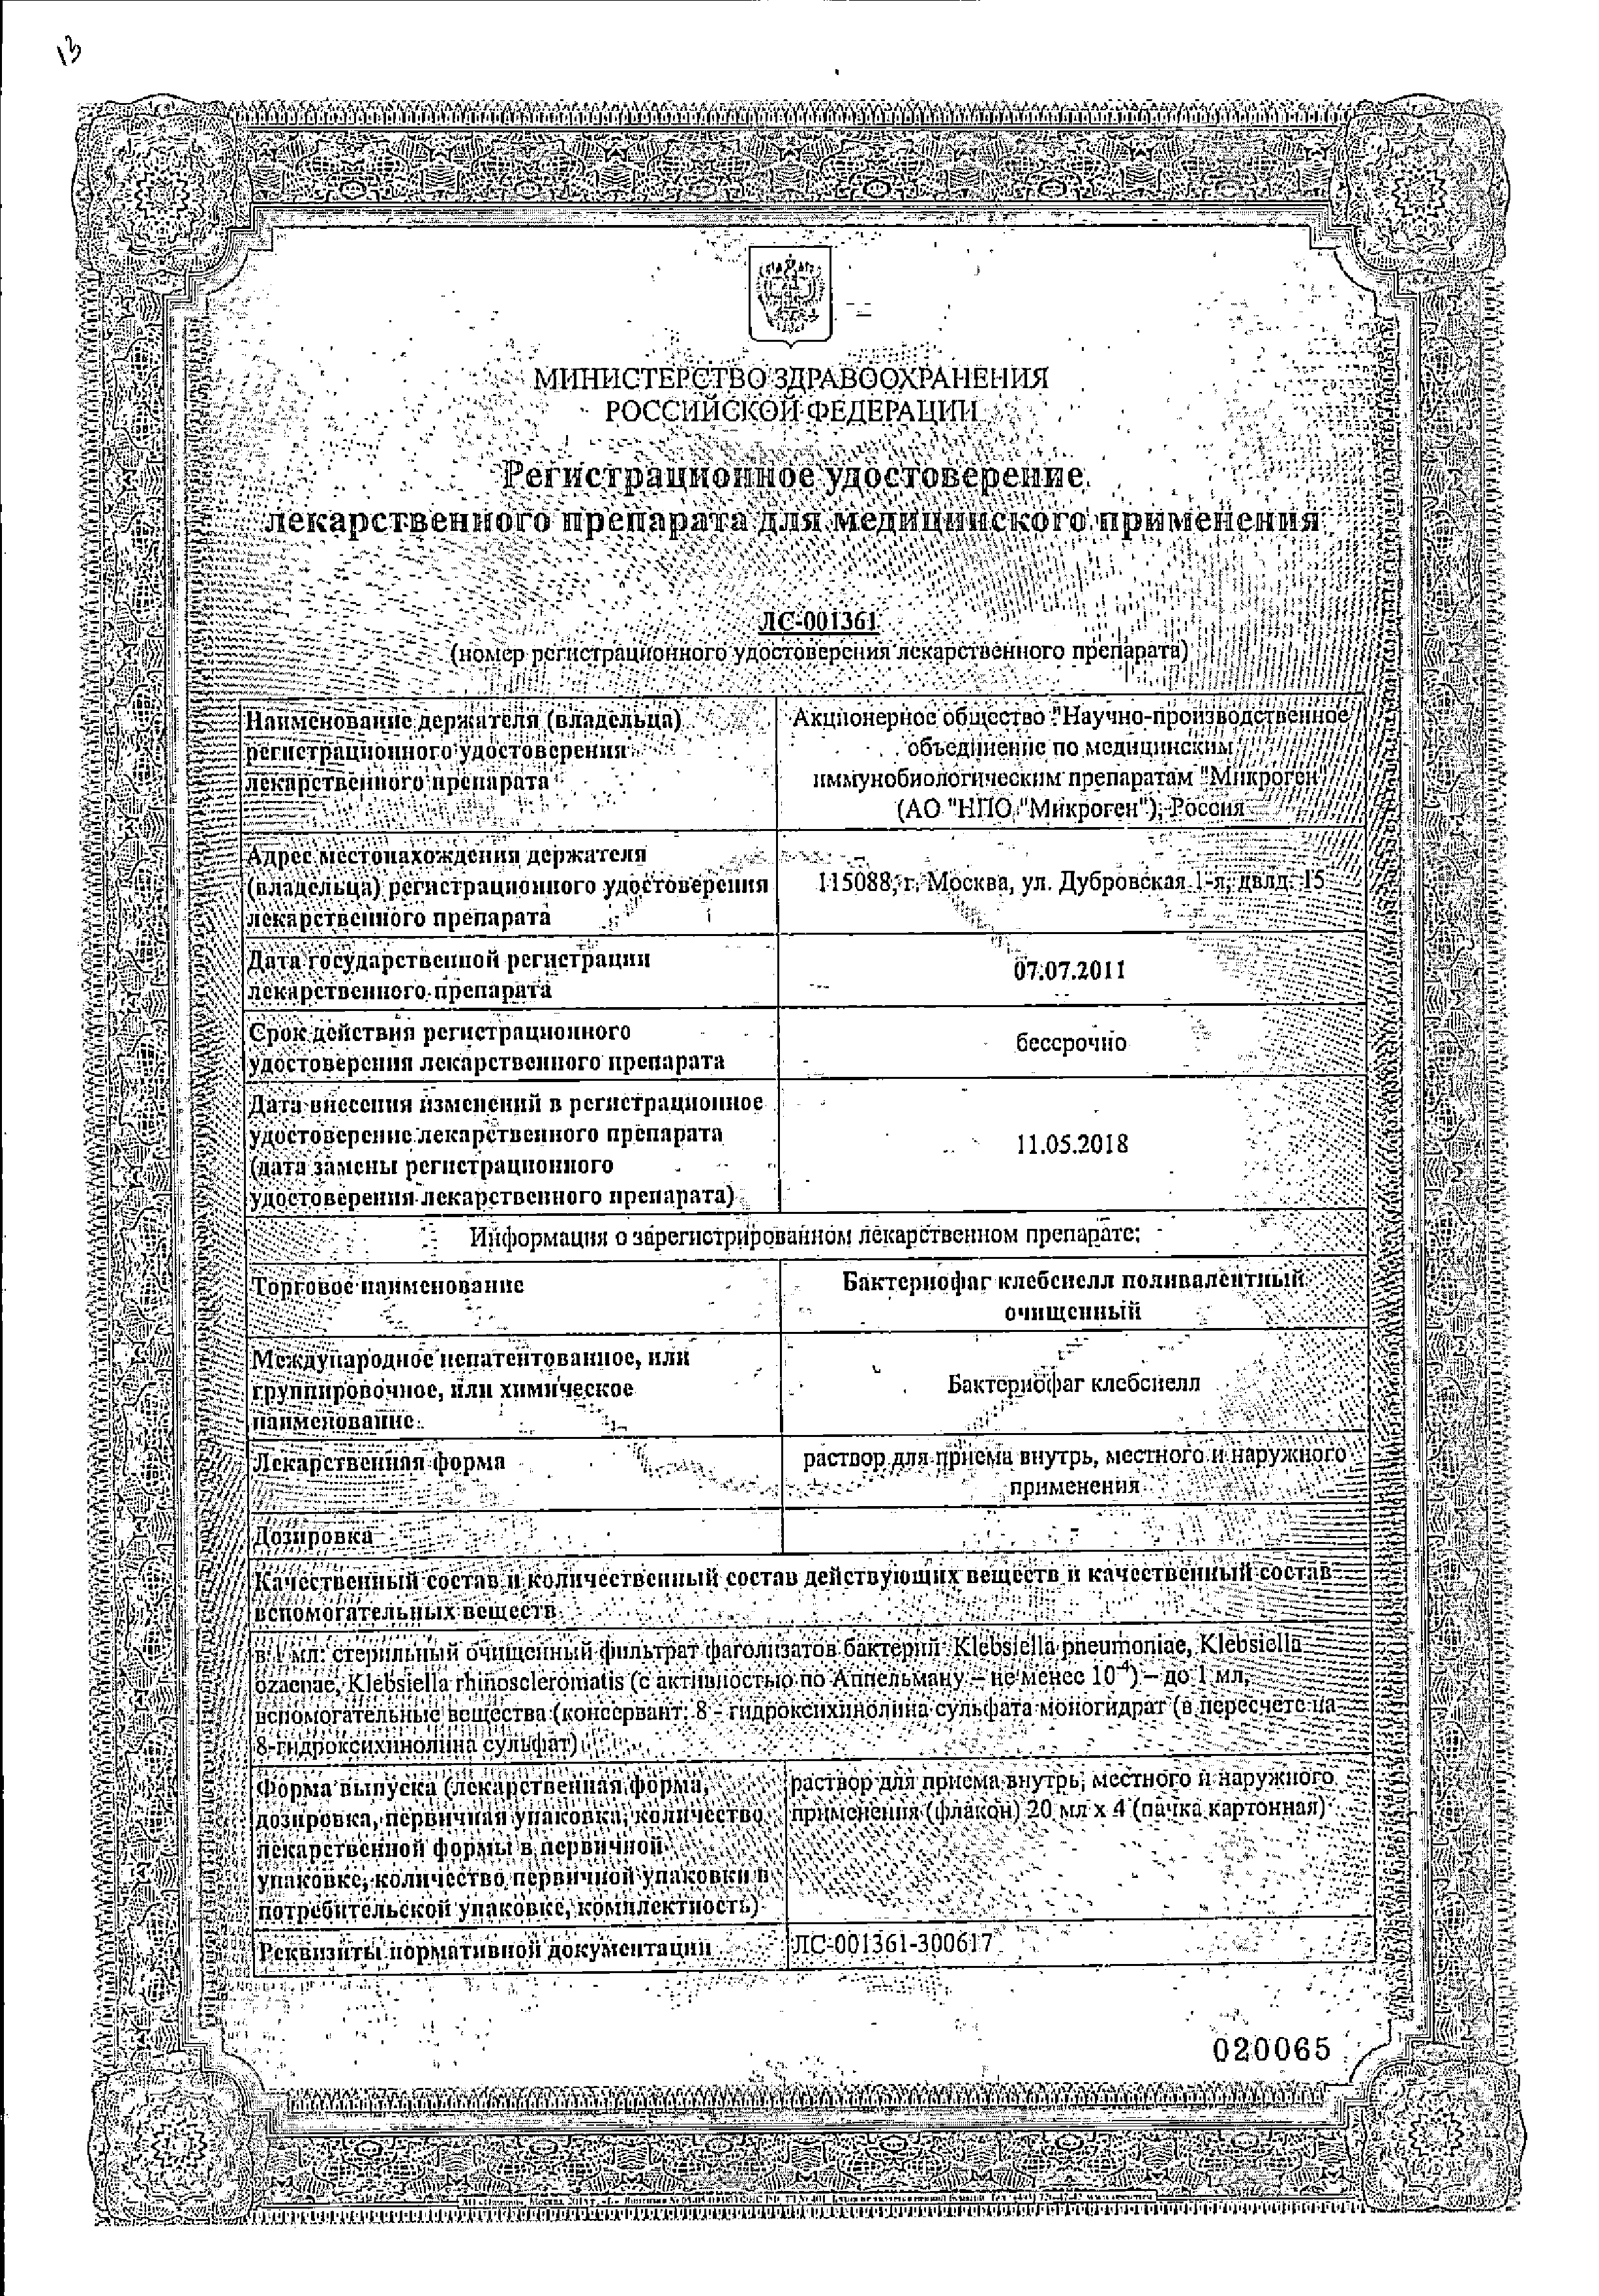 Бактериофаг клебсиелл поливалентный очищенный сертификат